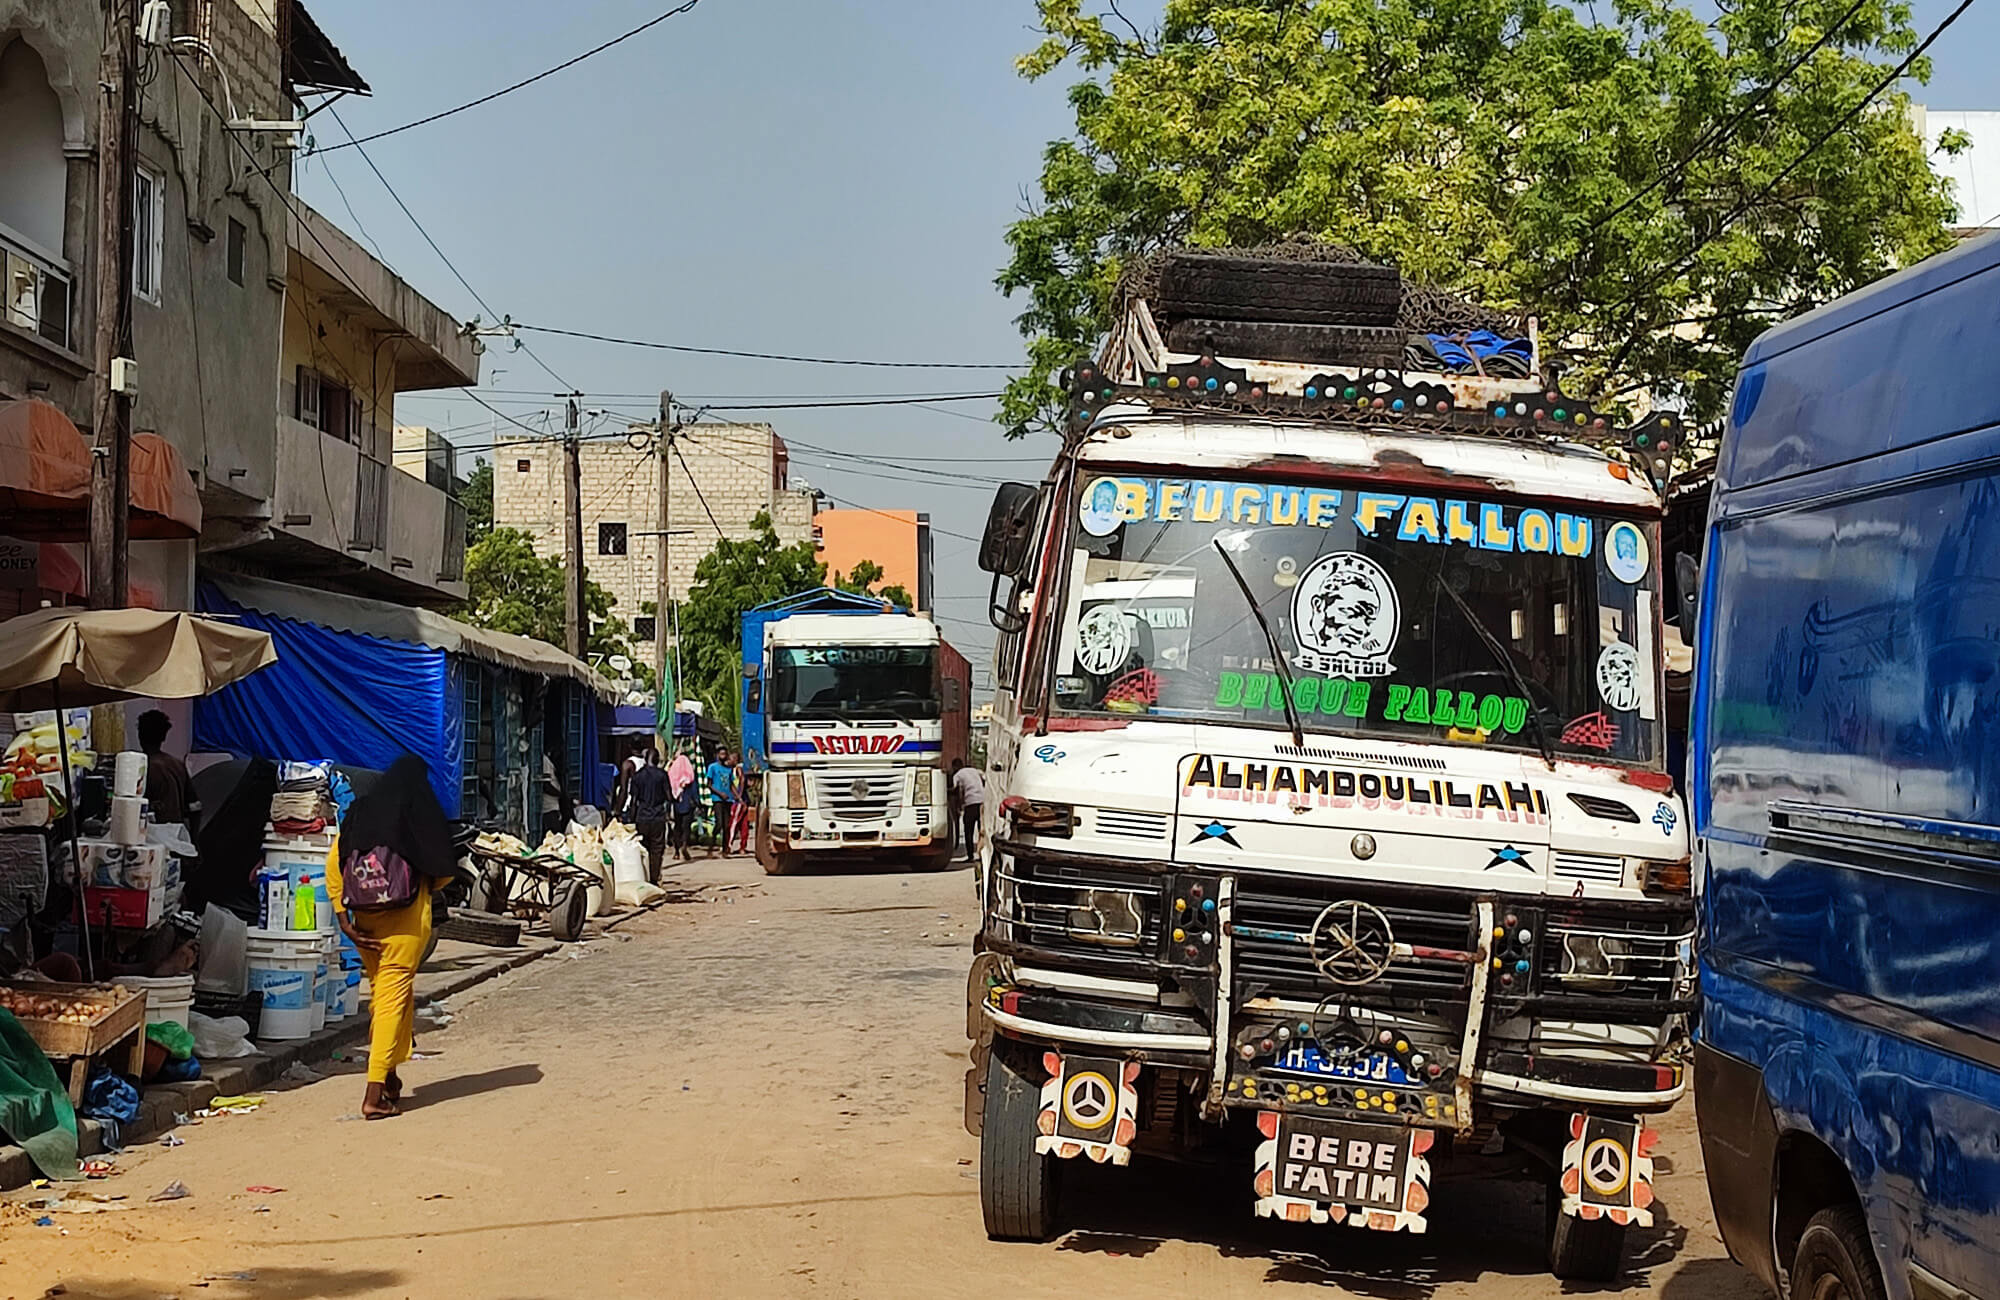 Laster in Strassen von Dakar